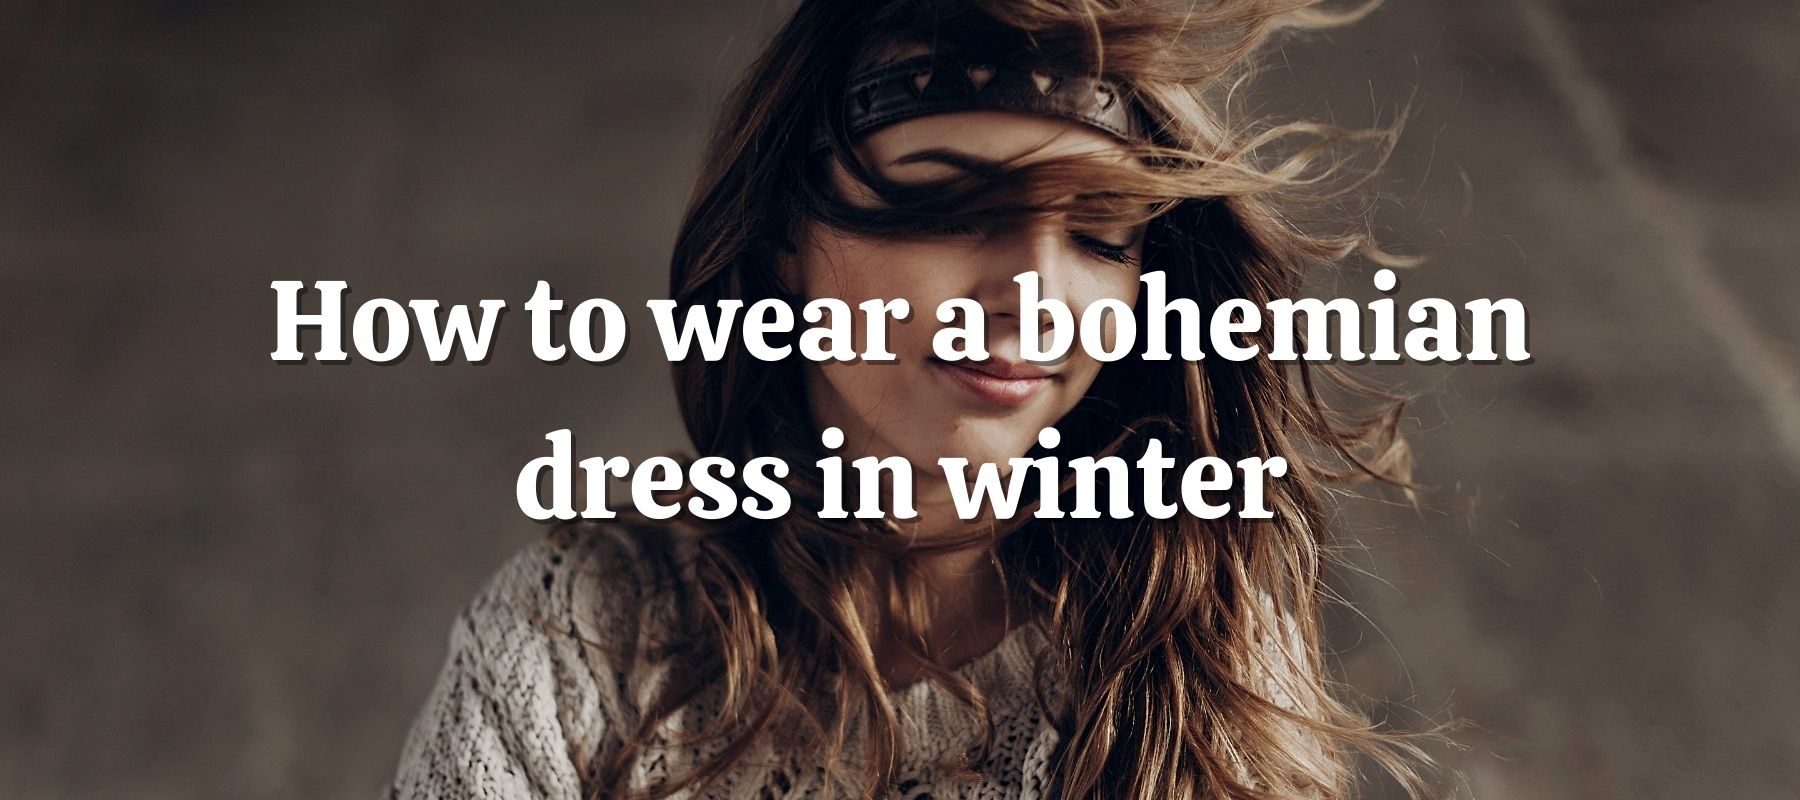 How to wear a bohemian dress in winter?